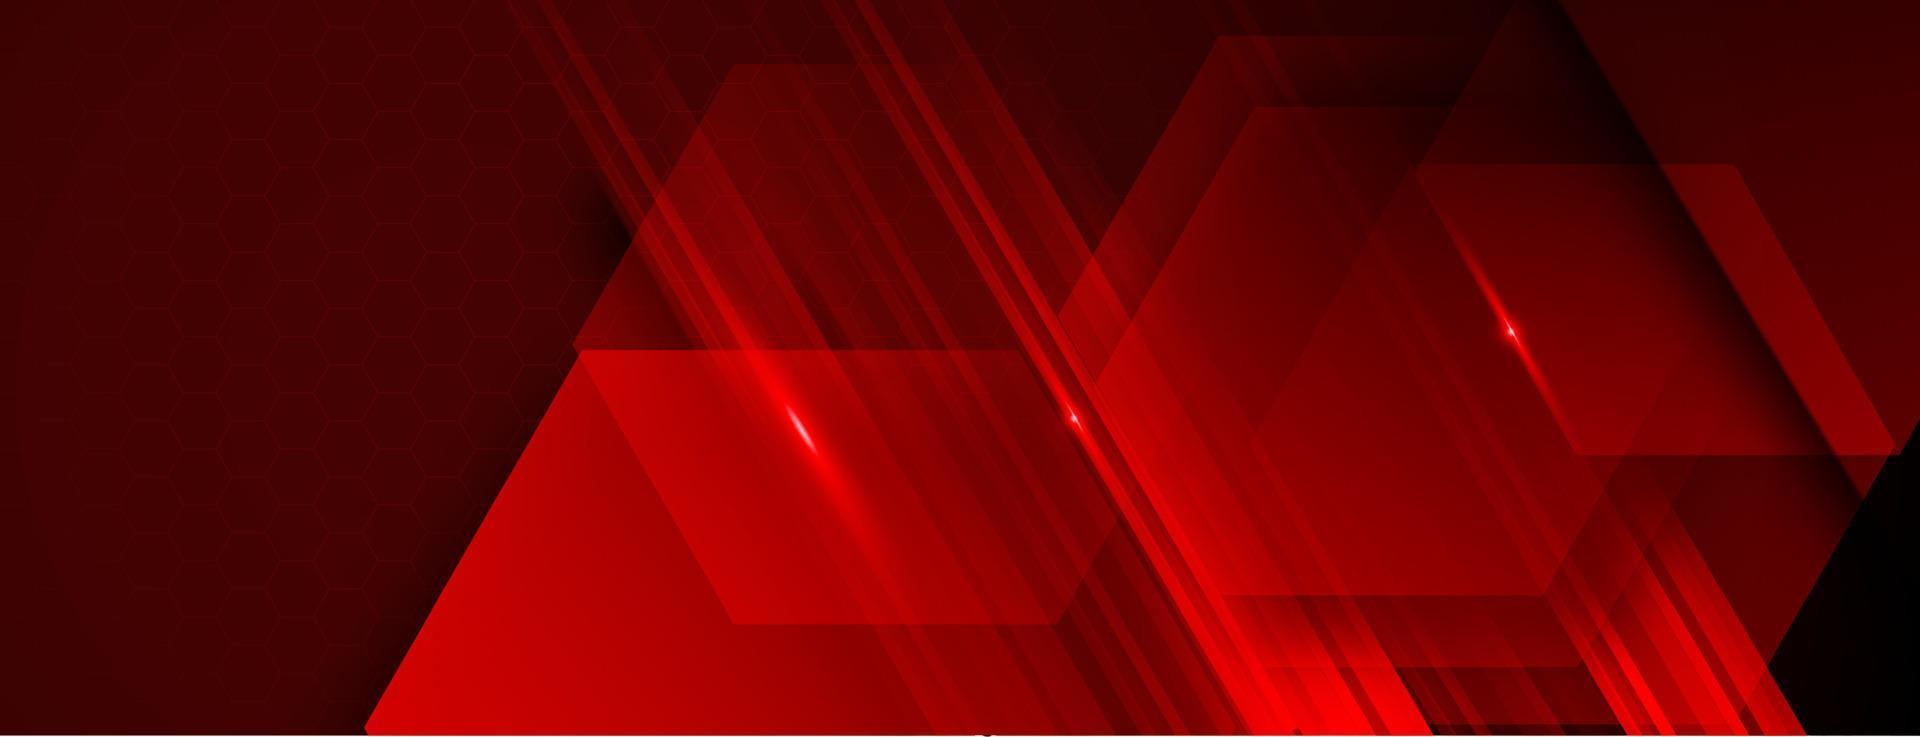 futuristische zeshoekig rood beweging abstract presentatie sjabloon geïsoleerd vector